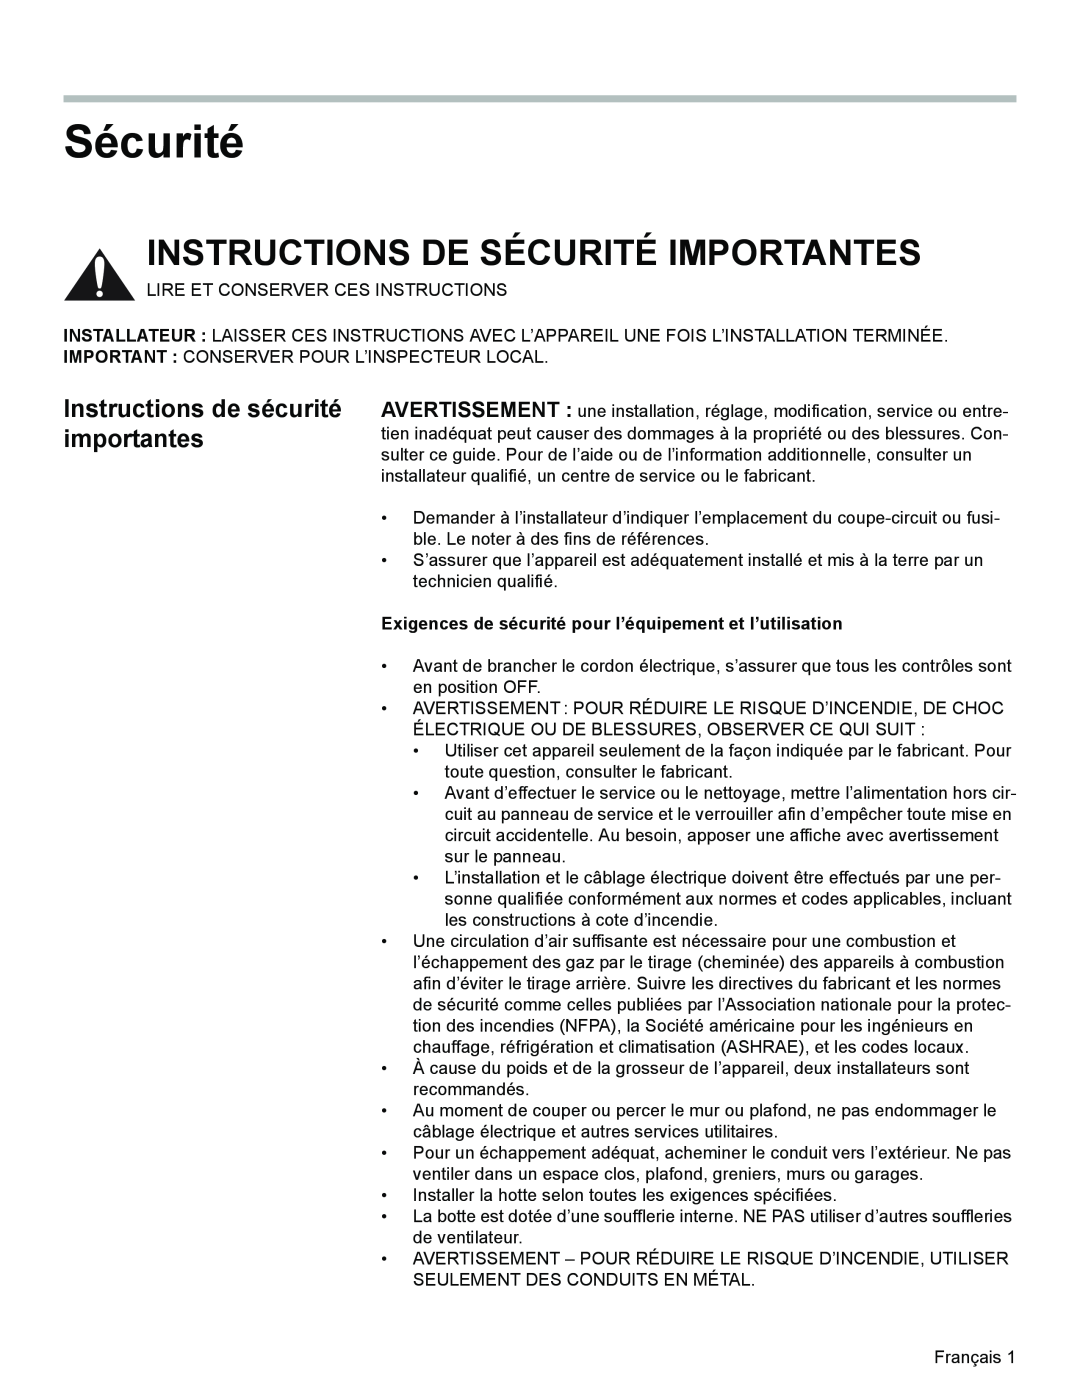 Bosch Appliances DKE96 installation manual Instructions De Sécurité Importantes, Instructions de sécurité importantes 